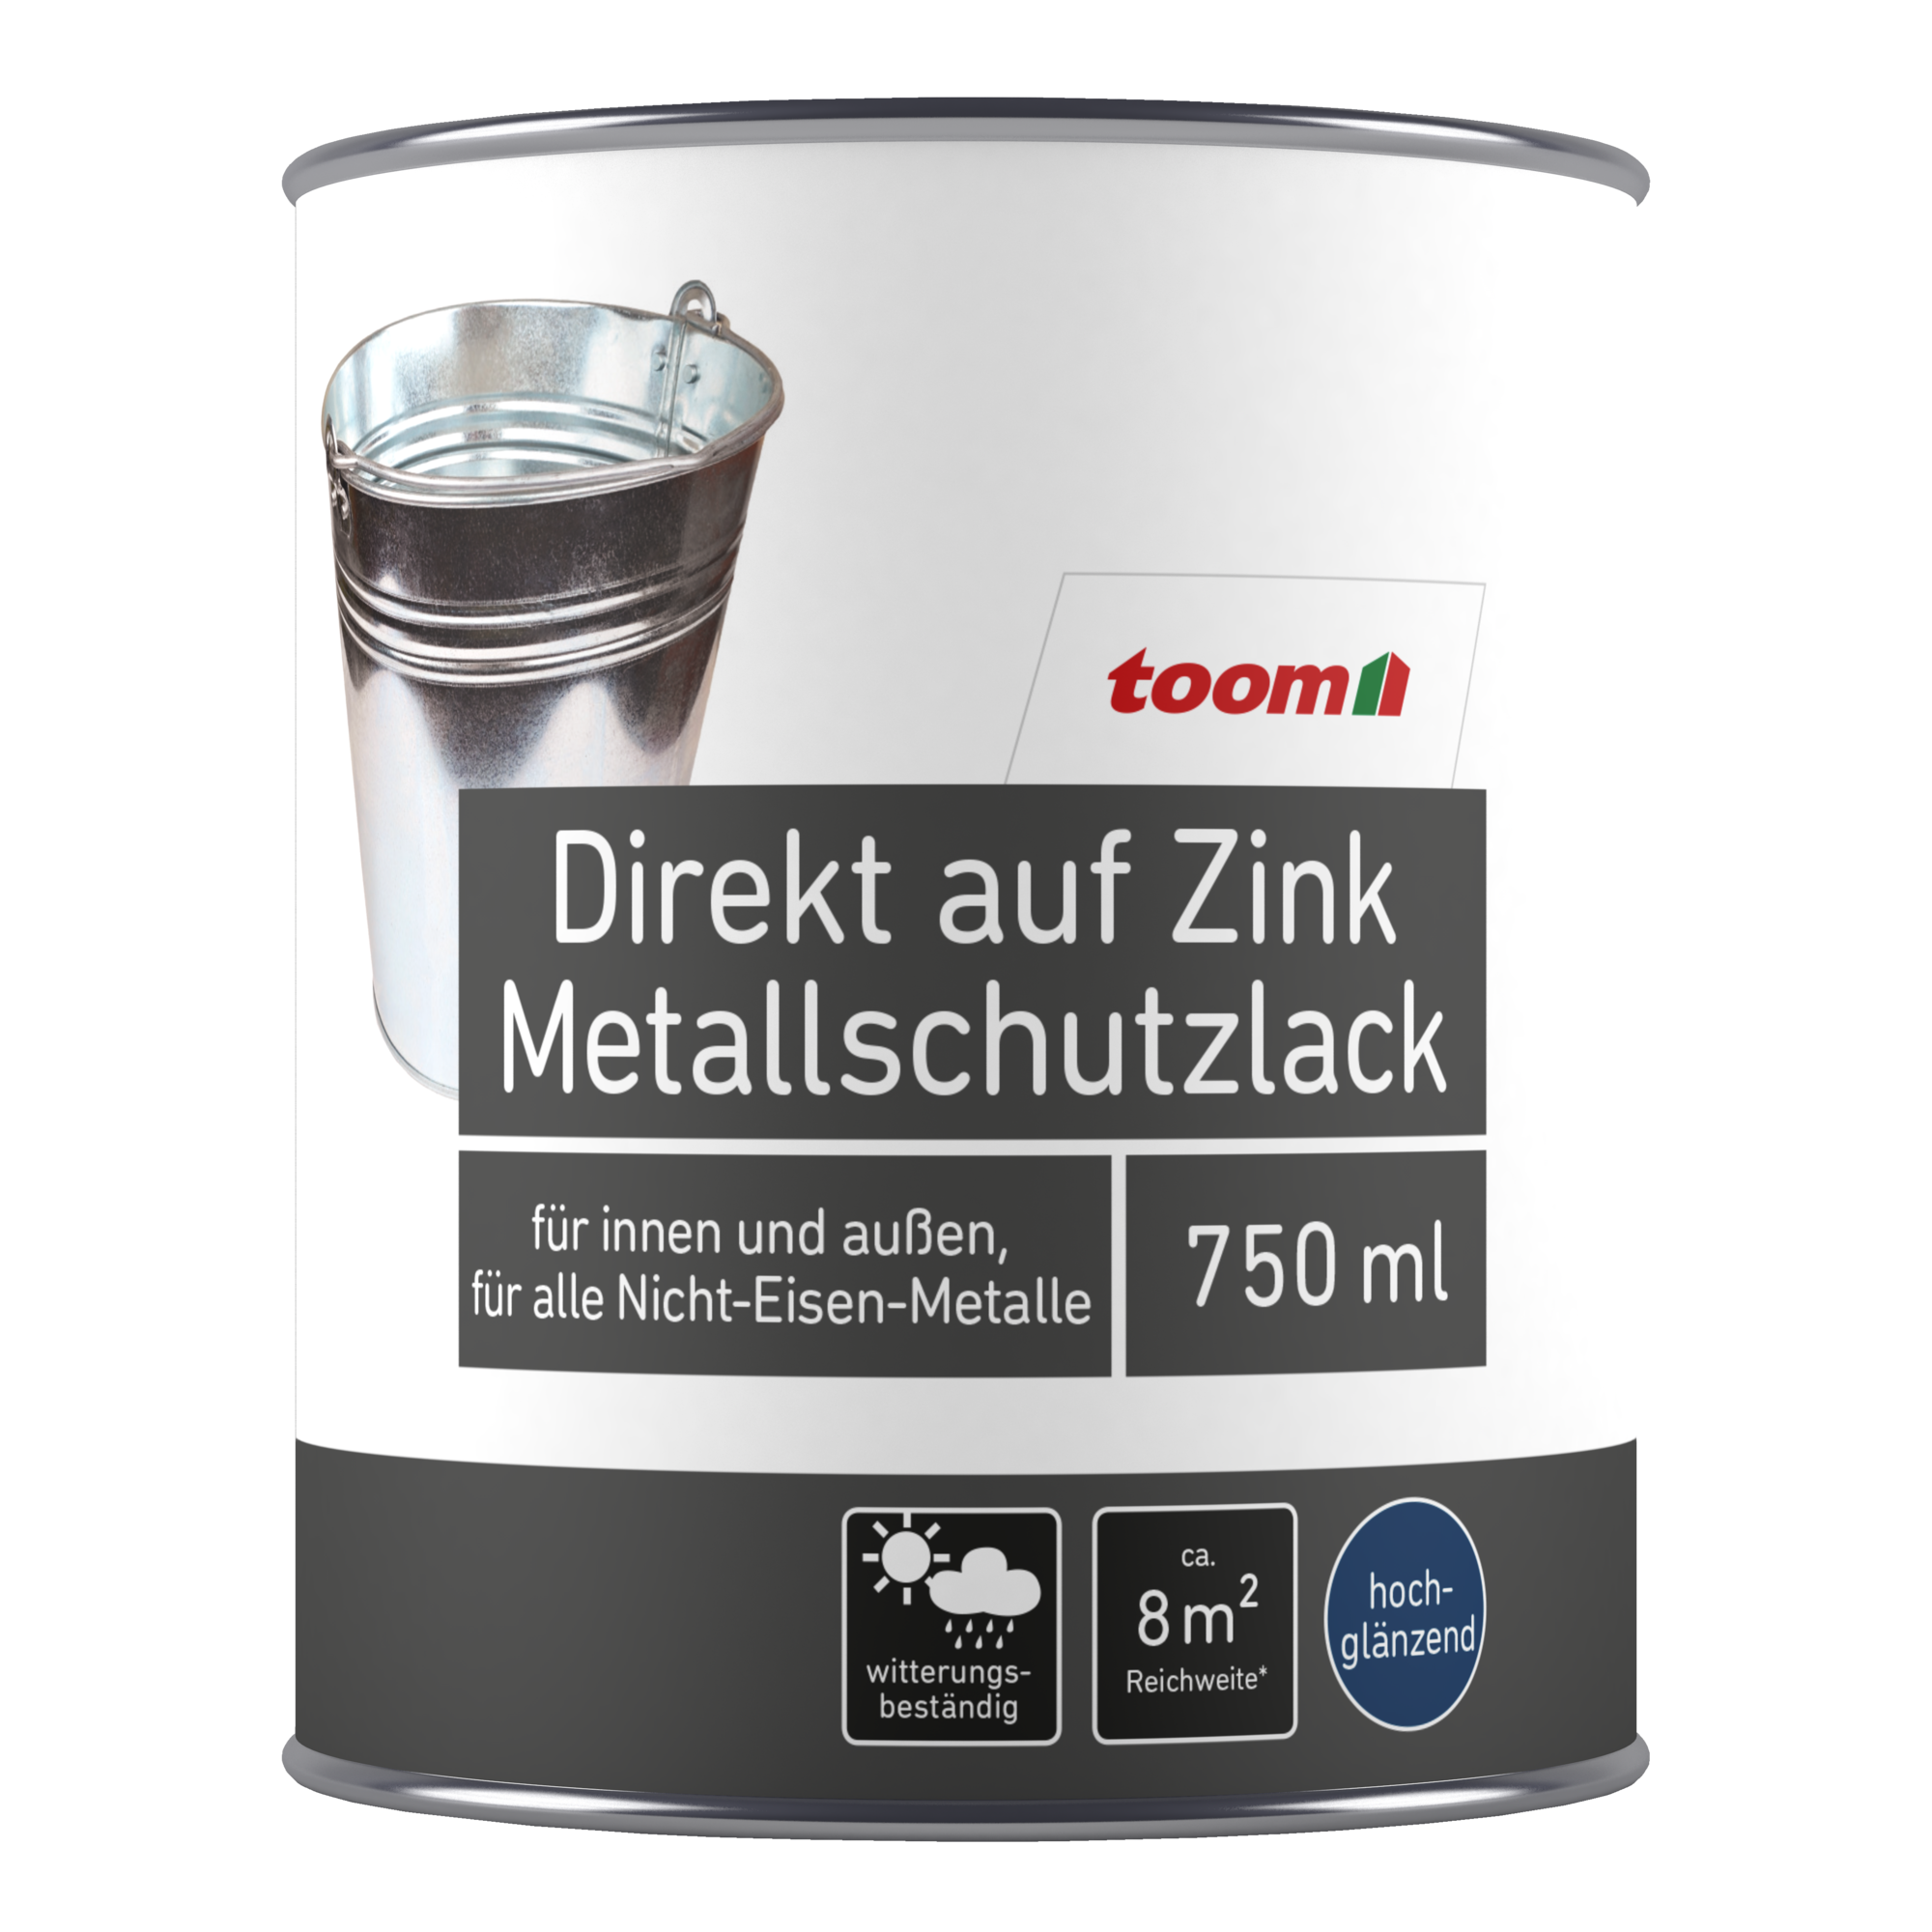 Metallschutzlack silberfarben glänzend 750 ml + product picture